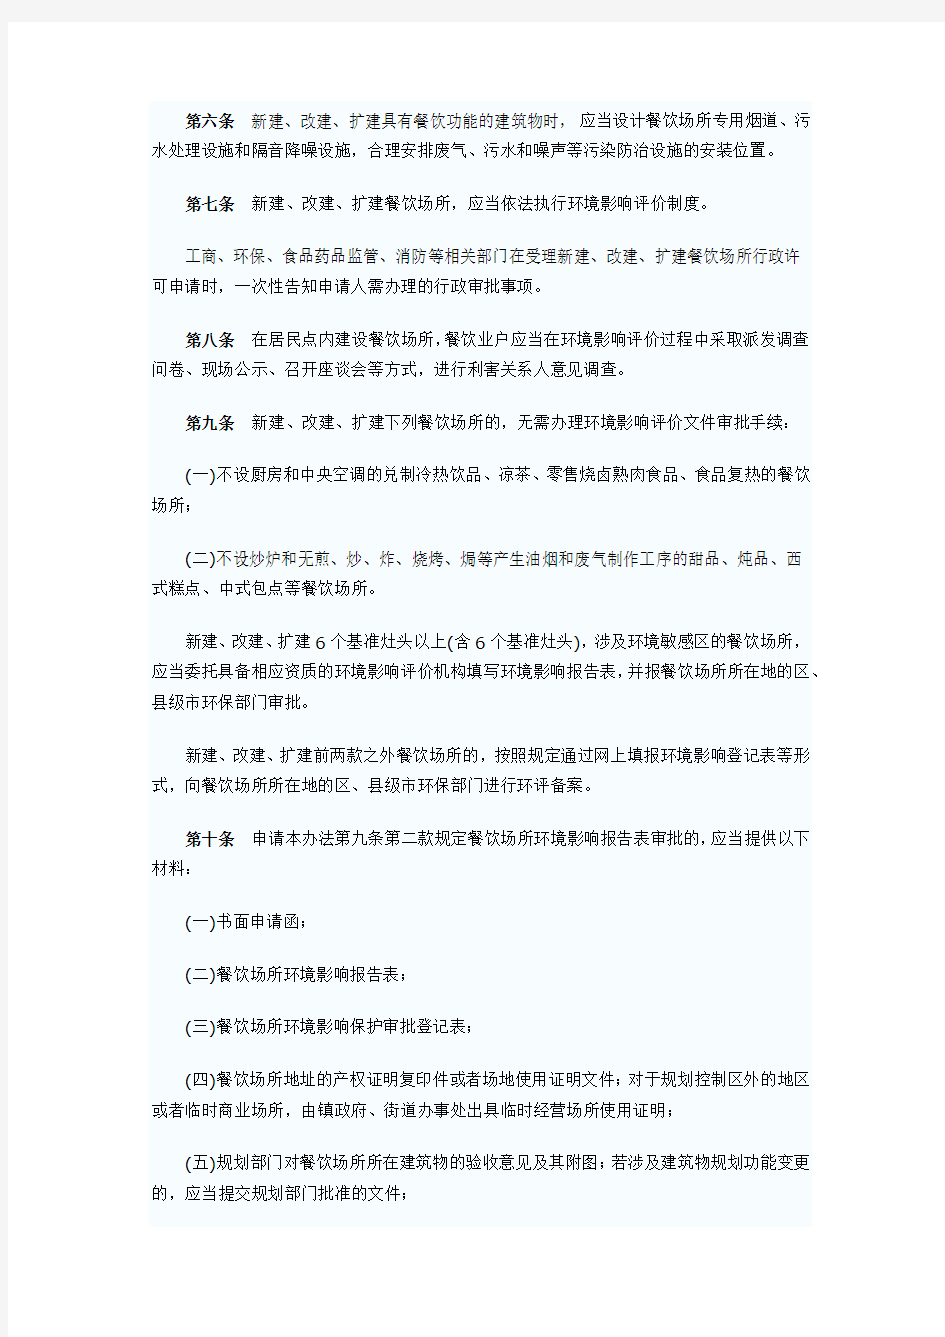 广州市餐饮场所污染防治管理办法(2013年11月01日起实施)